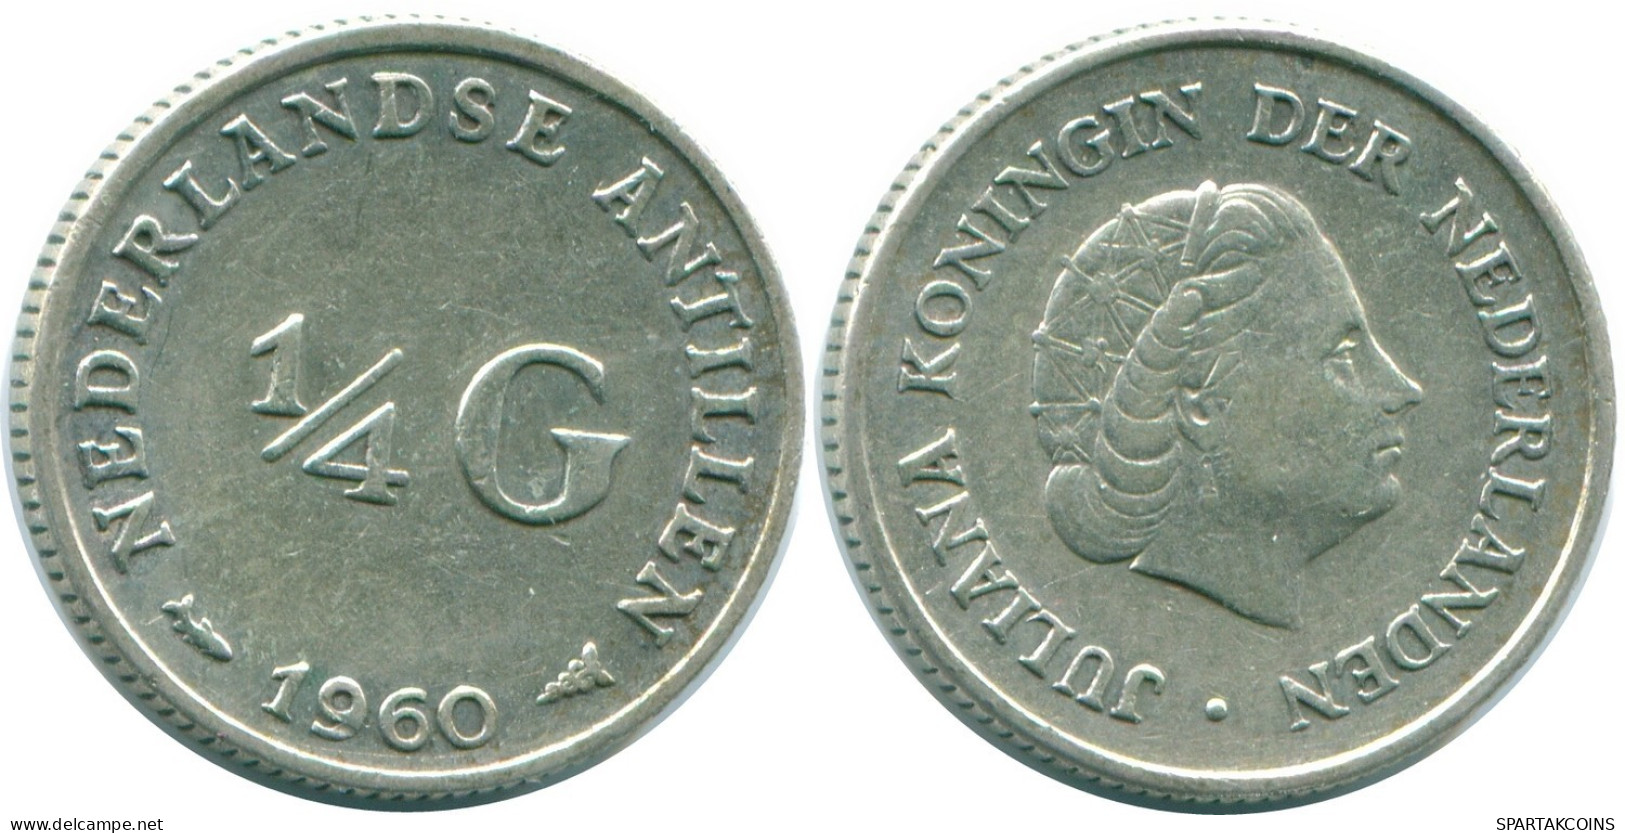 1/4 GULDEN 1960 NIEDERLÄNDISCHE ANTILLEN SILBER Koloniale Münze #NL11028.4.D.A - Nederlandse Antillen